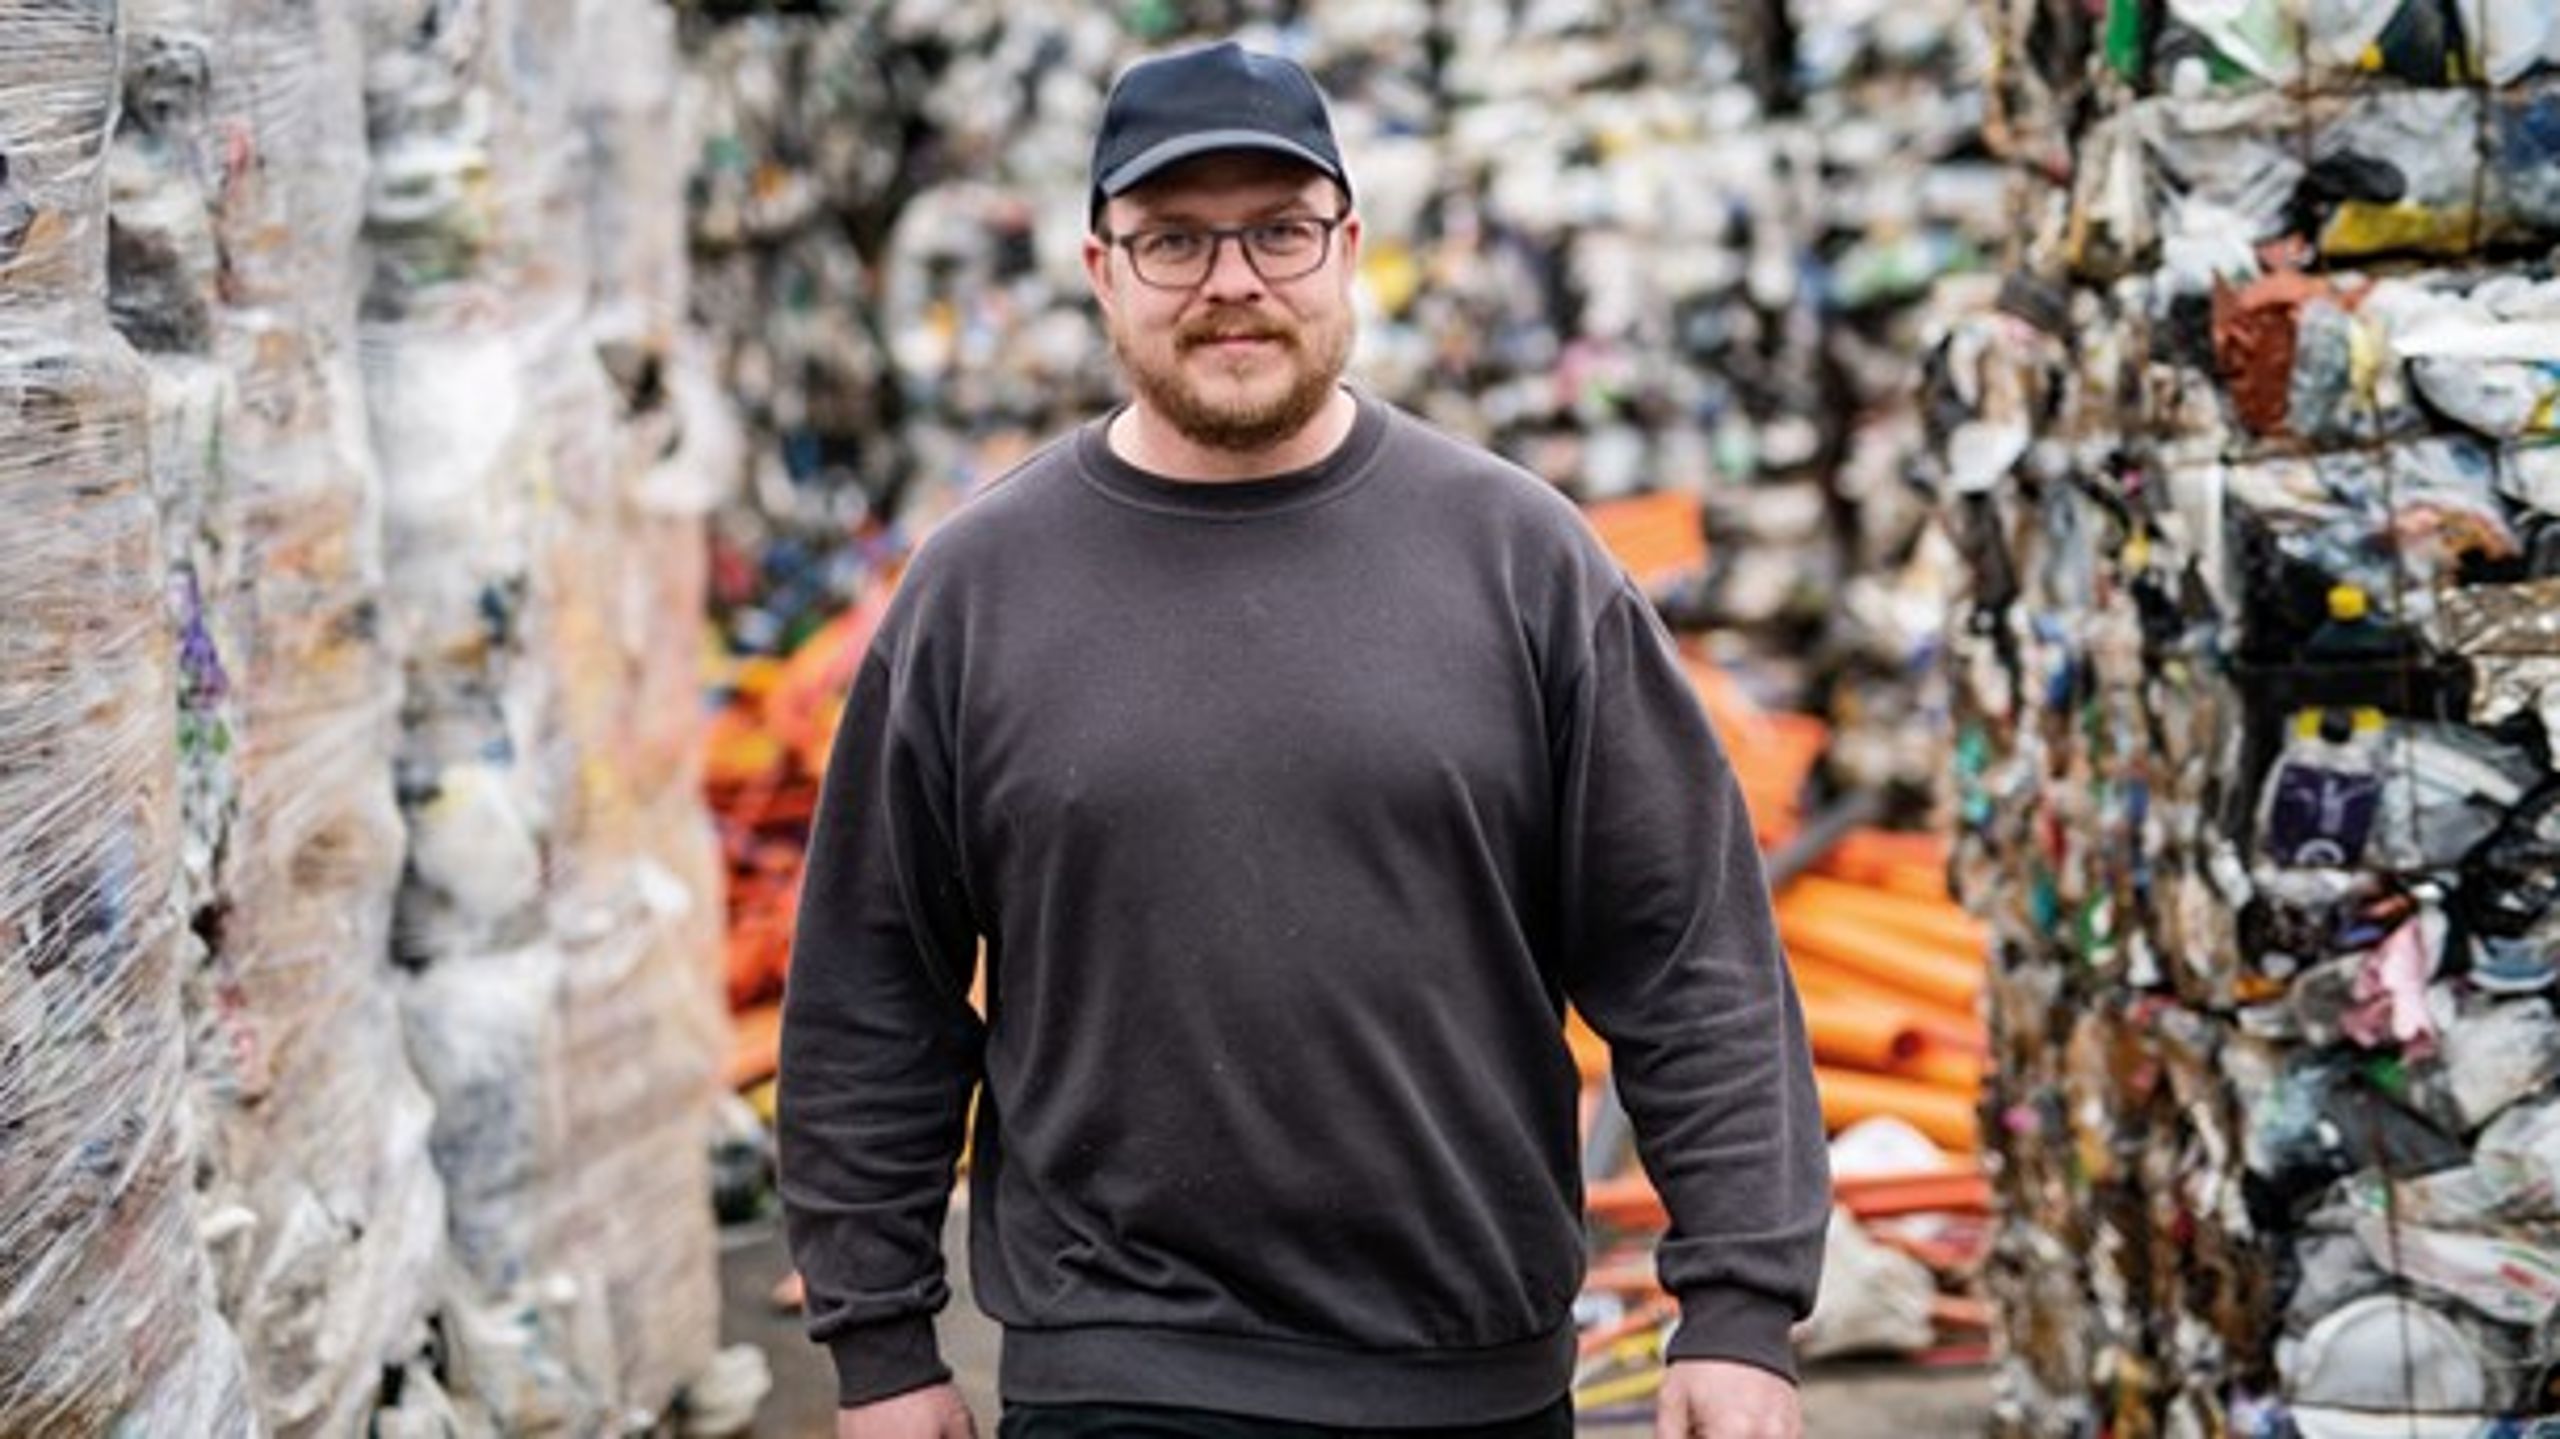 Kim Dalsgaard er ekspert i plastik. Hver dag håndterer han
sammen med sine medarbejdere mange ton plastik fra danske husholdninger.